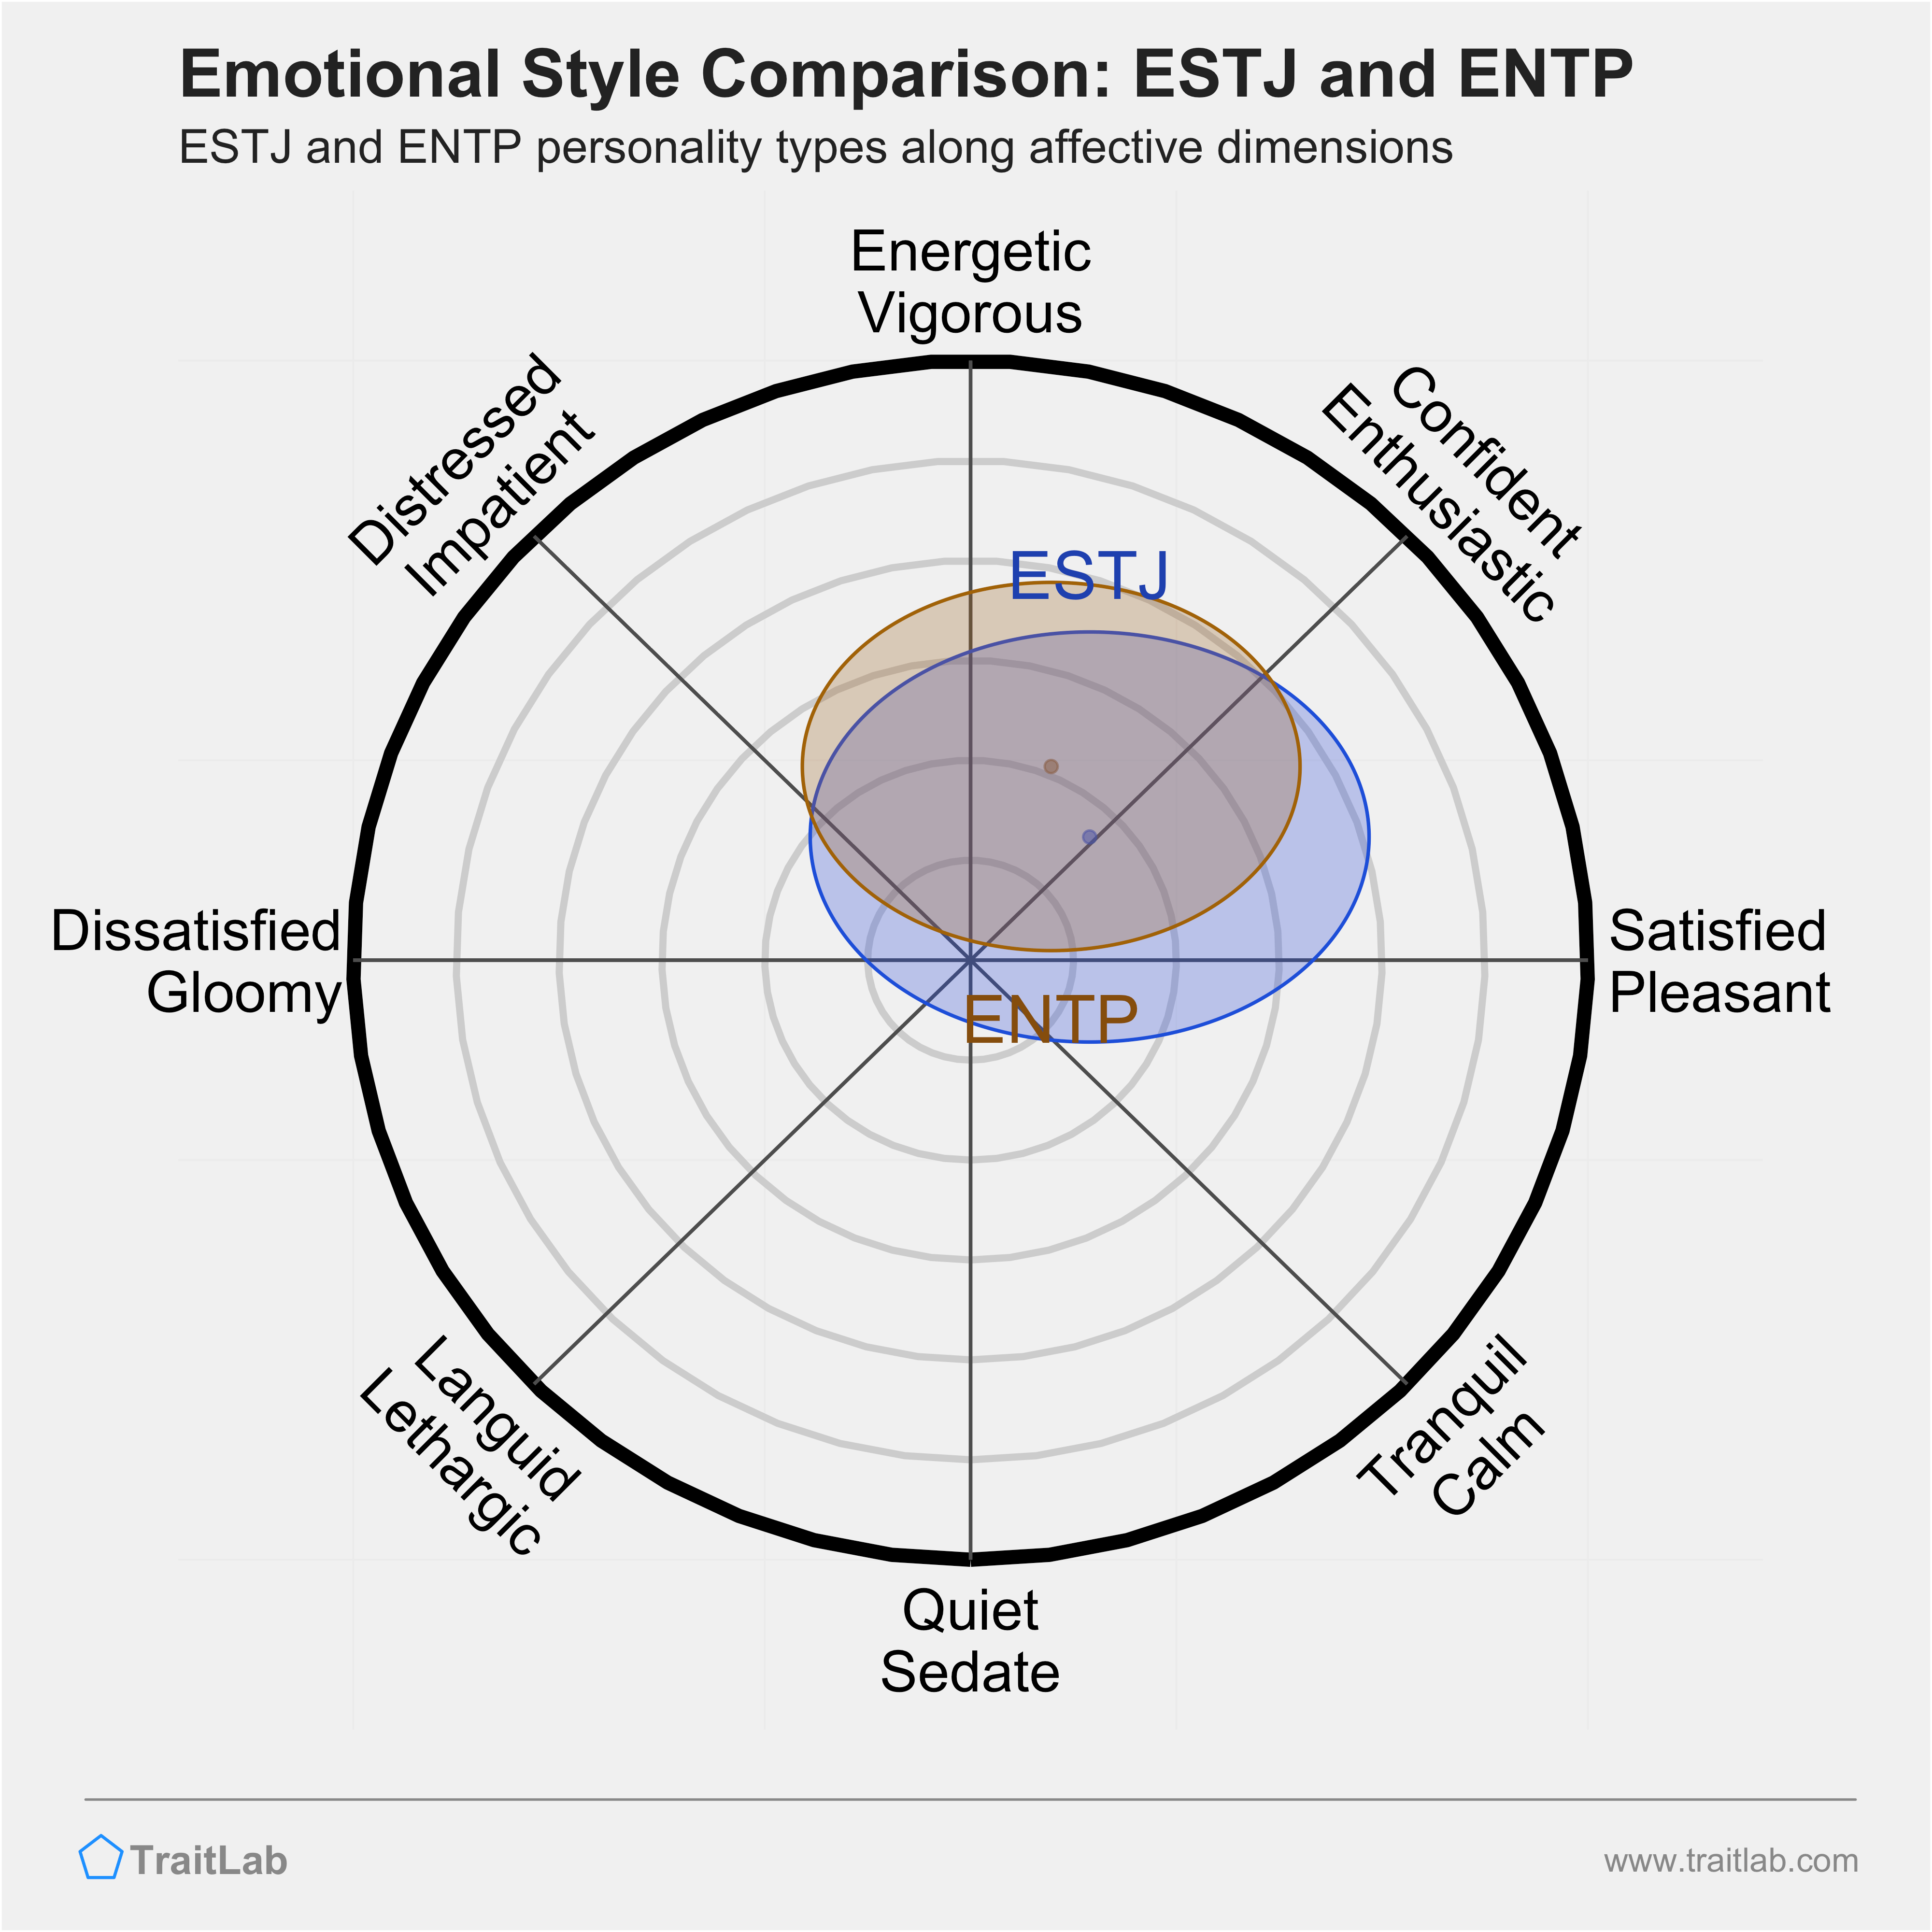 ESTJ and ENTP comparison across emotional (affective) dimensions